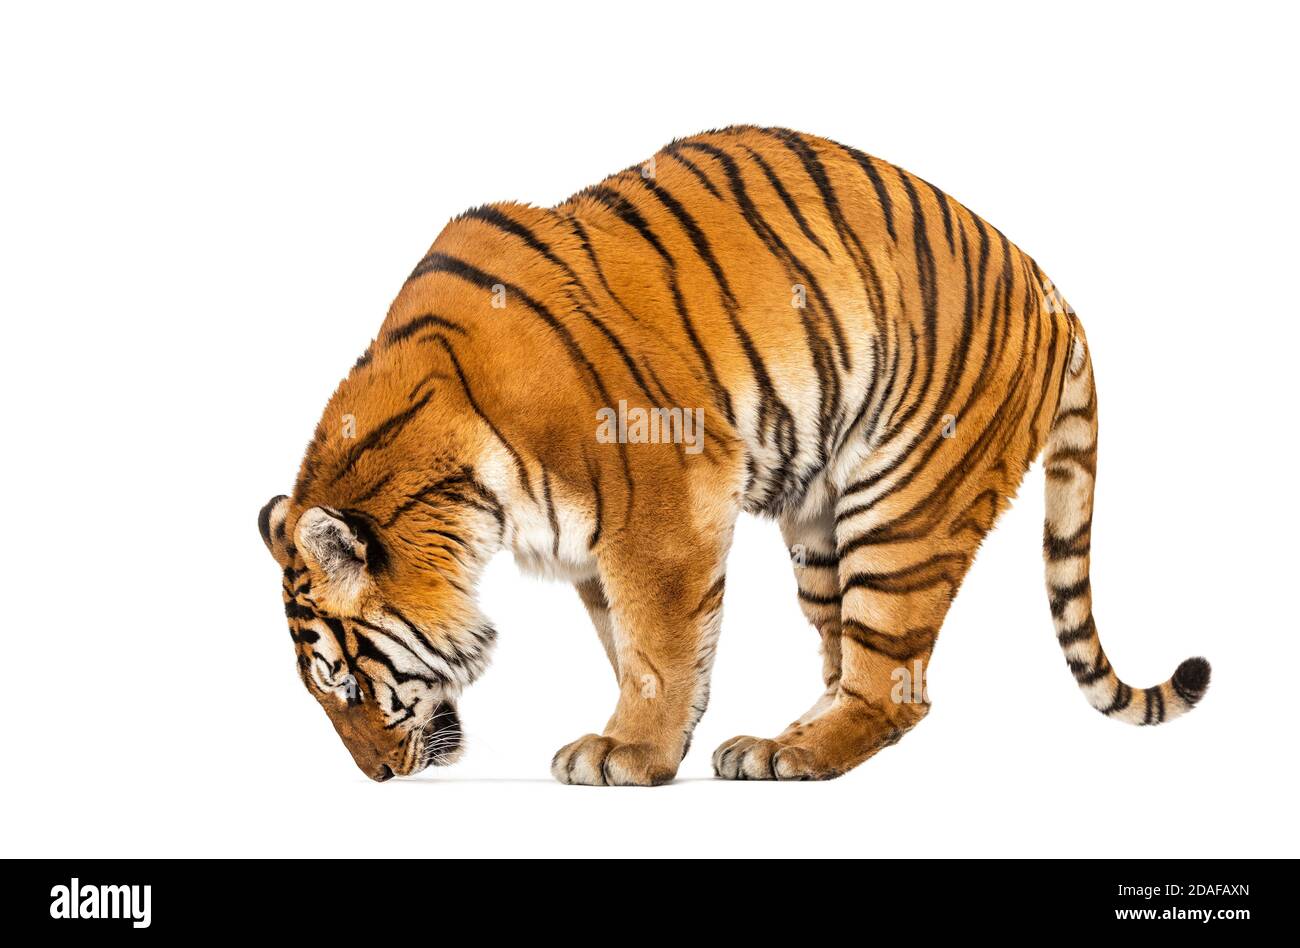 Tiger, Mund offen, schnüffelt die Luft, isoliert auf weiß Stockfoto